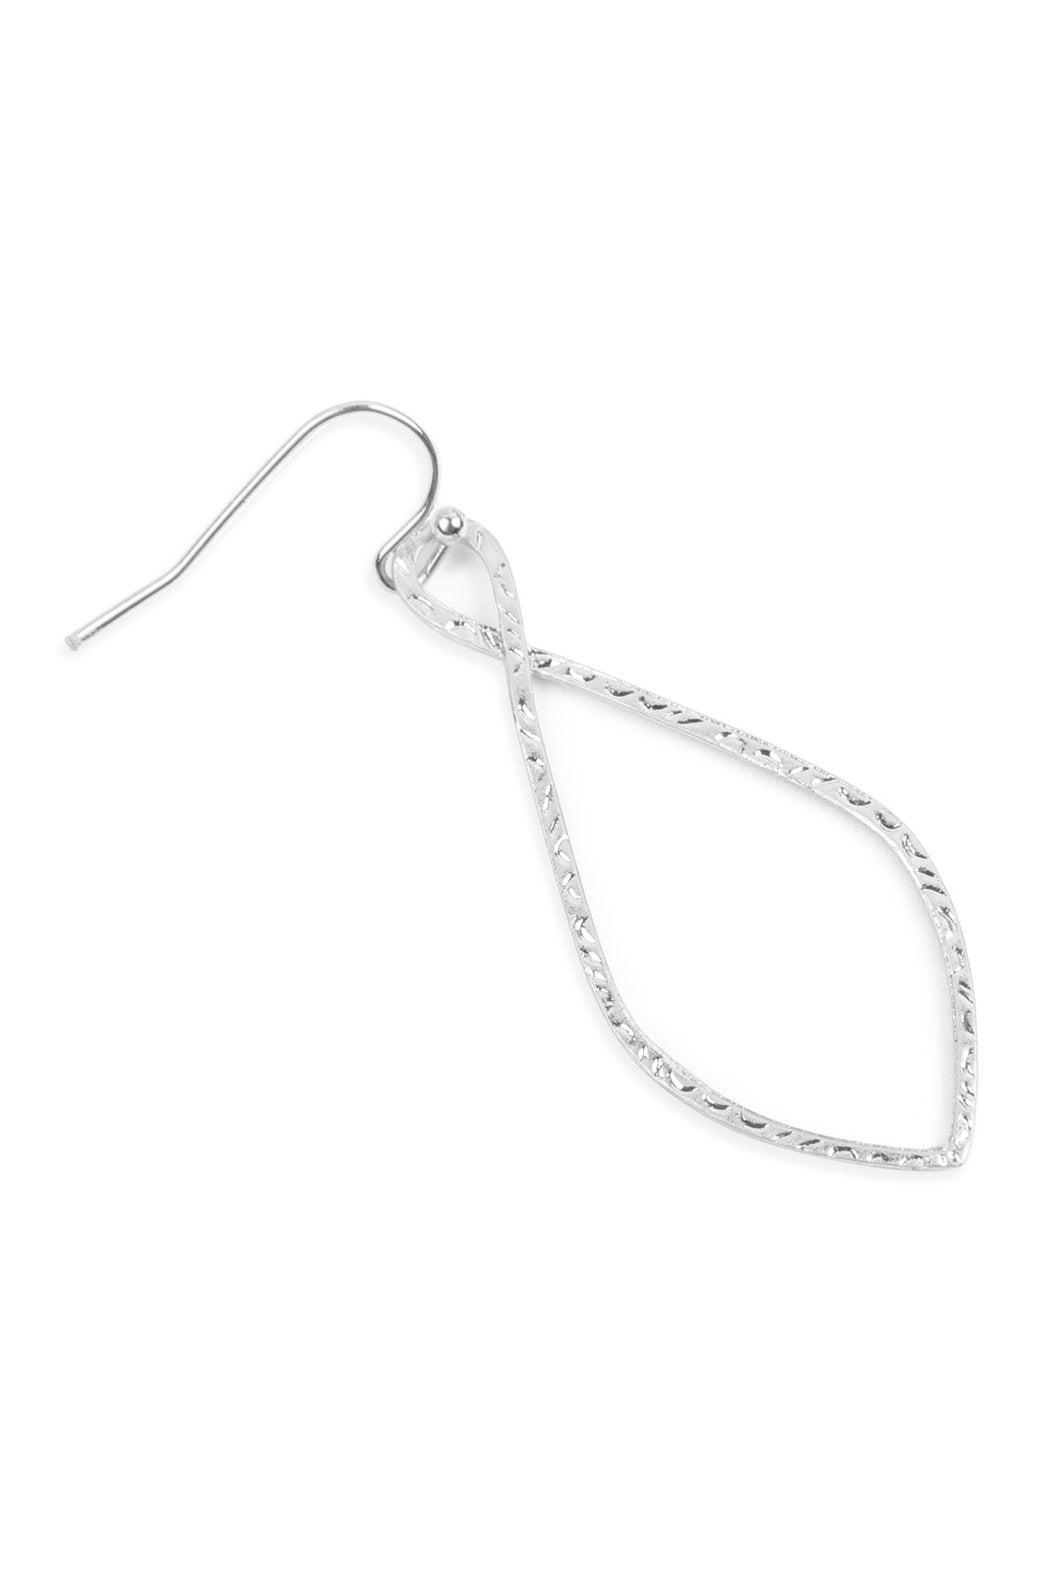 Hde2648 - Cast Christian Symbol Hook Drop Earrings